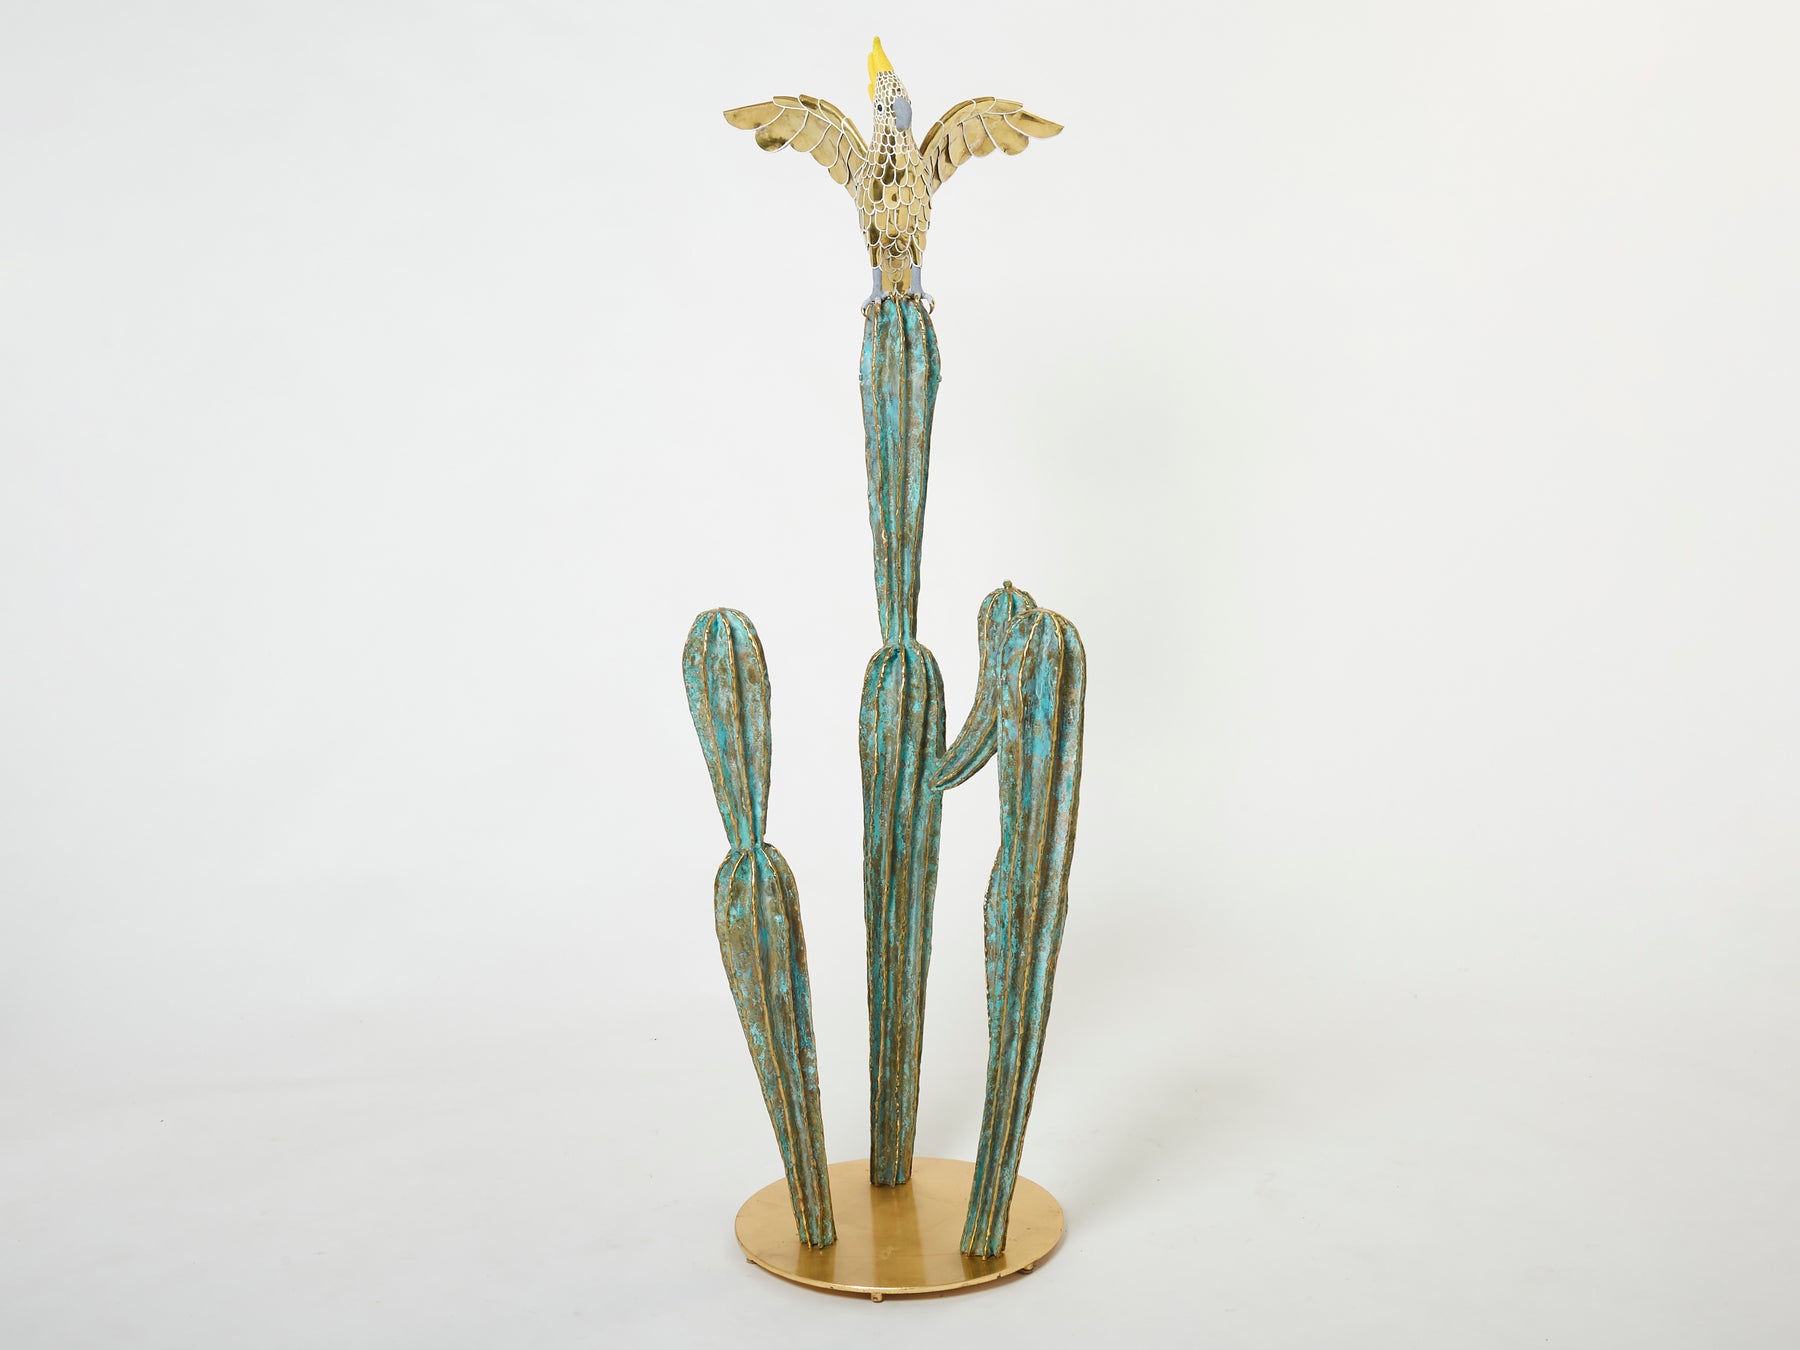 Console unique laiton cactus et perroquet par Alain Chervet 1989